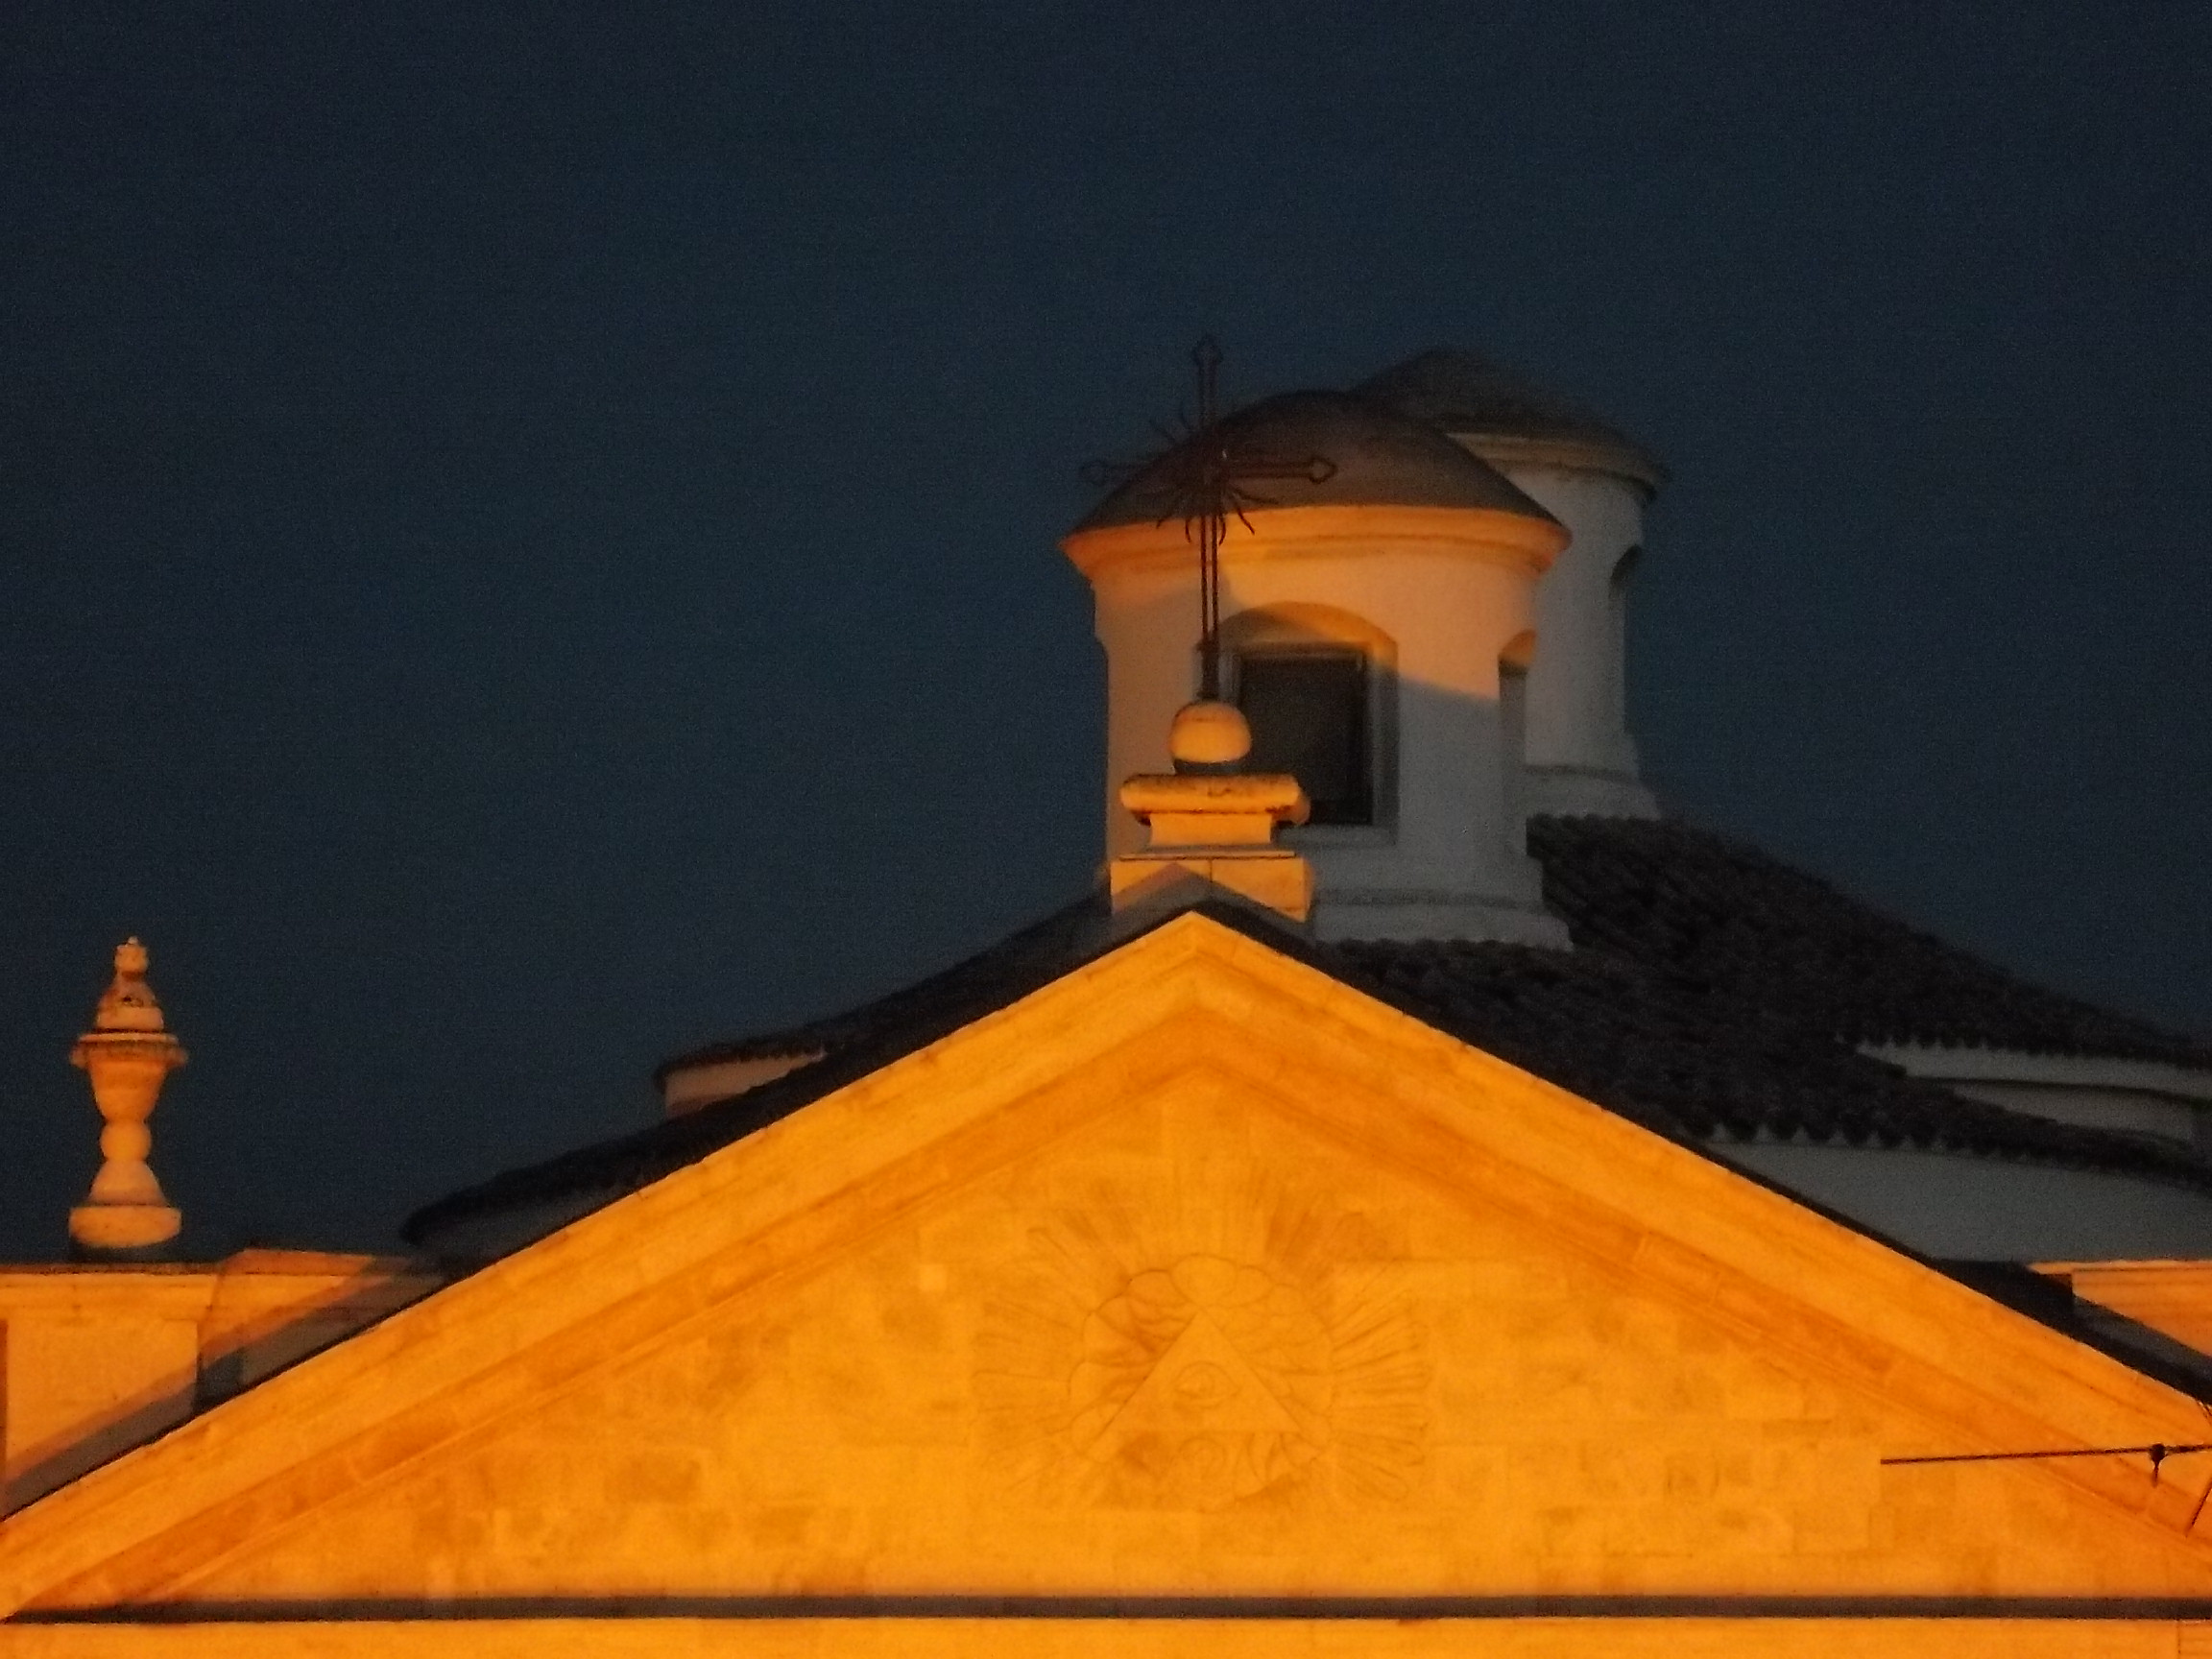 The church at night...